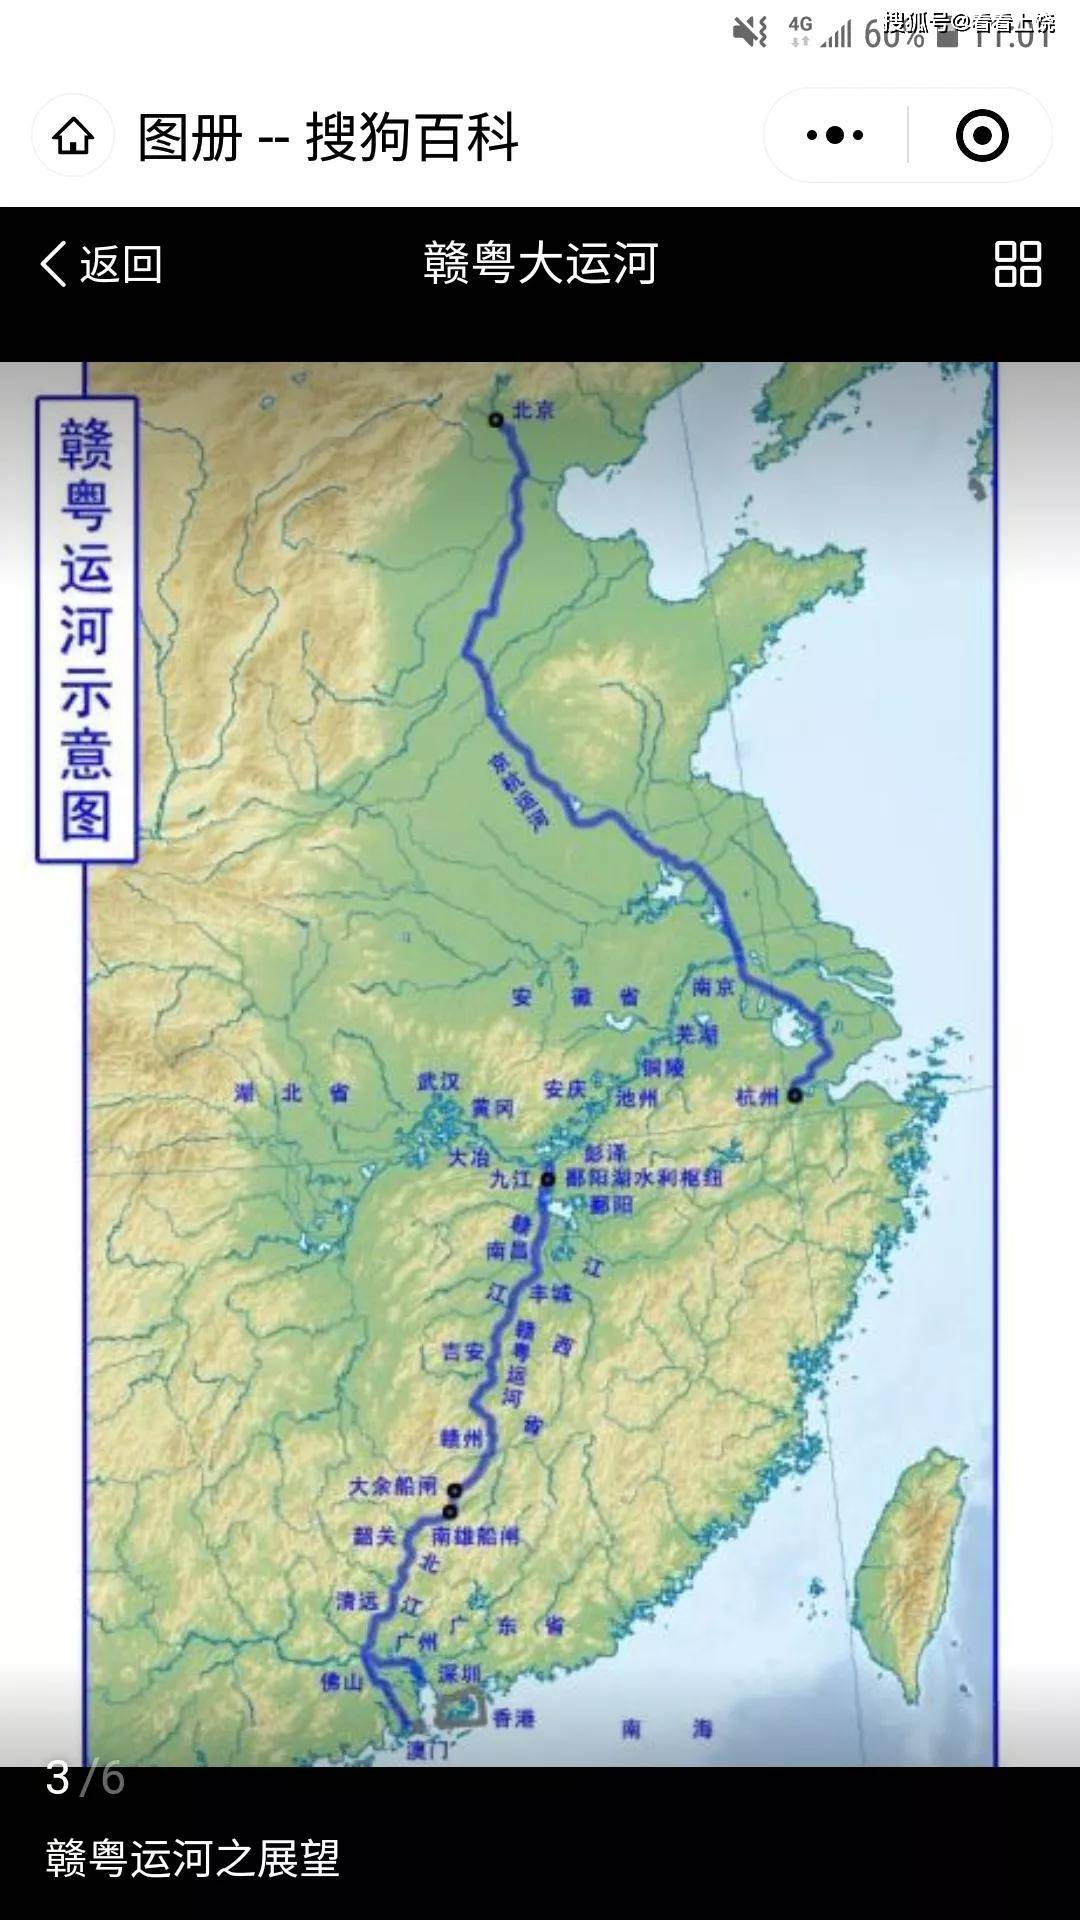 他希望开凿赣粤运河,将赣江水与北江水用于农田灌溉.